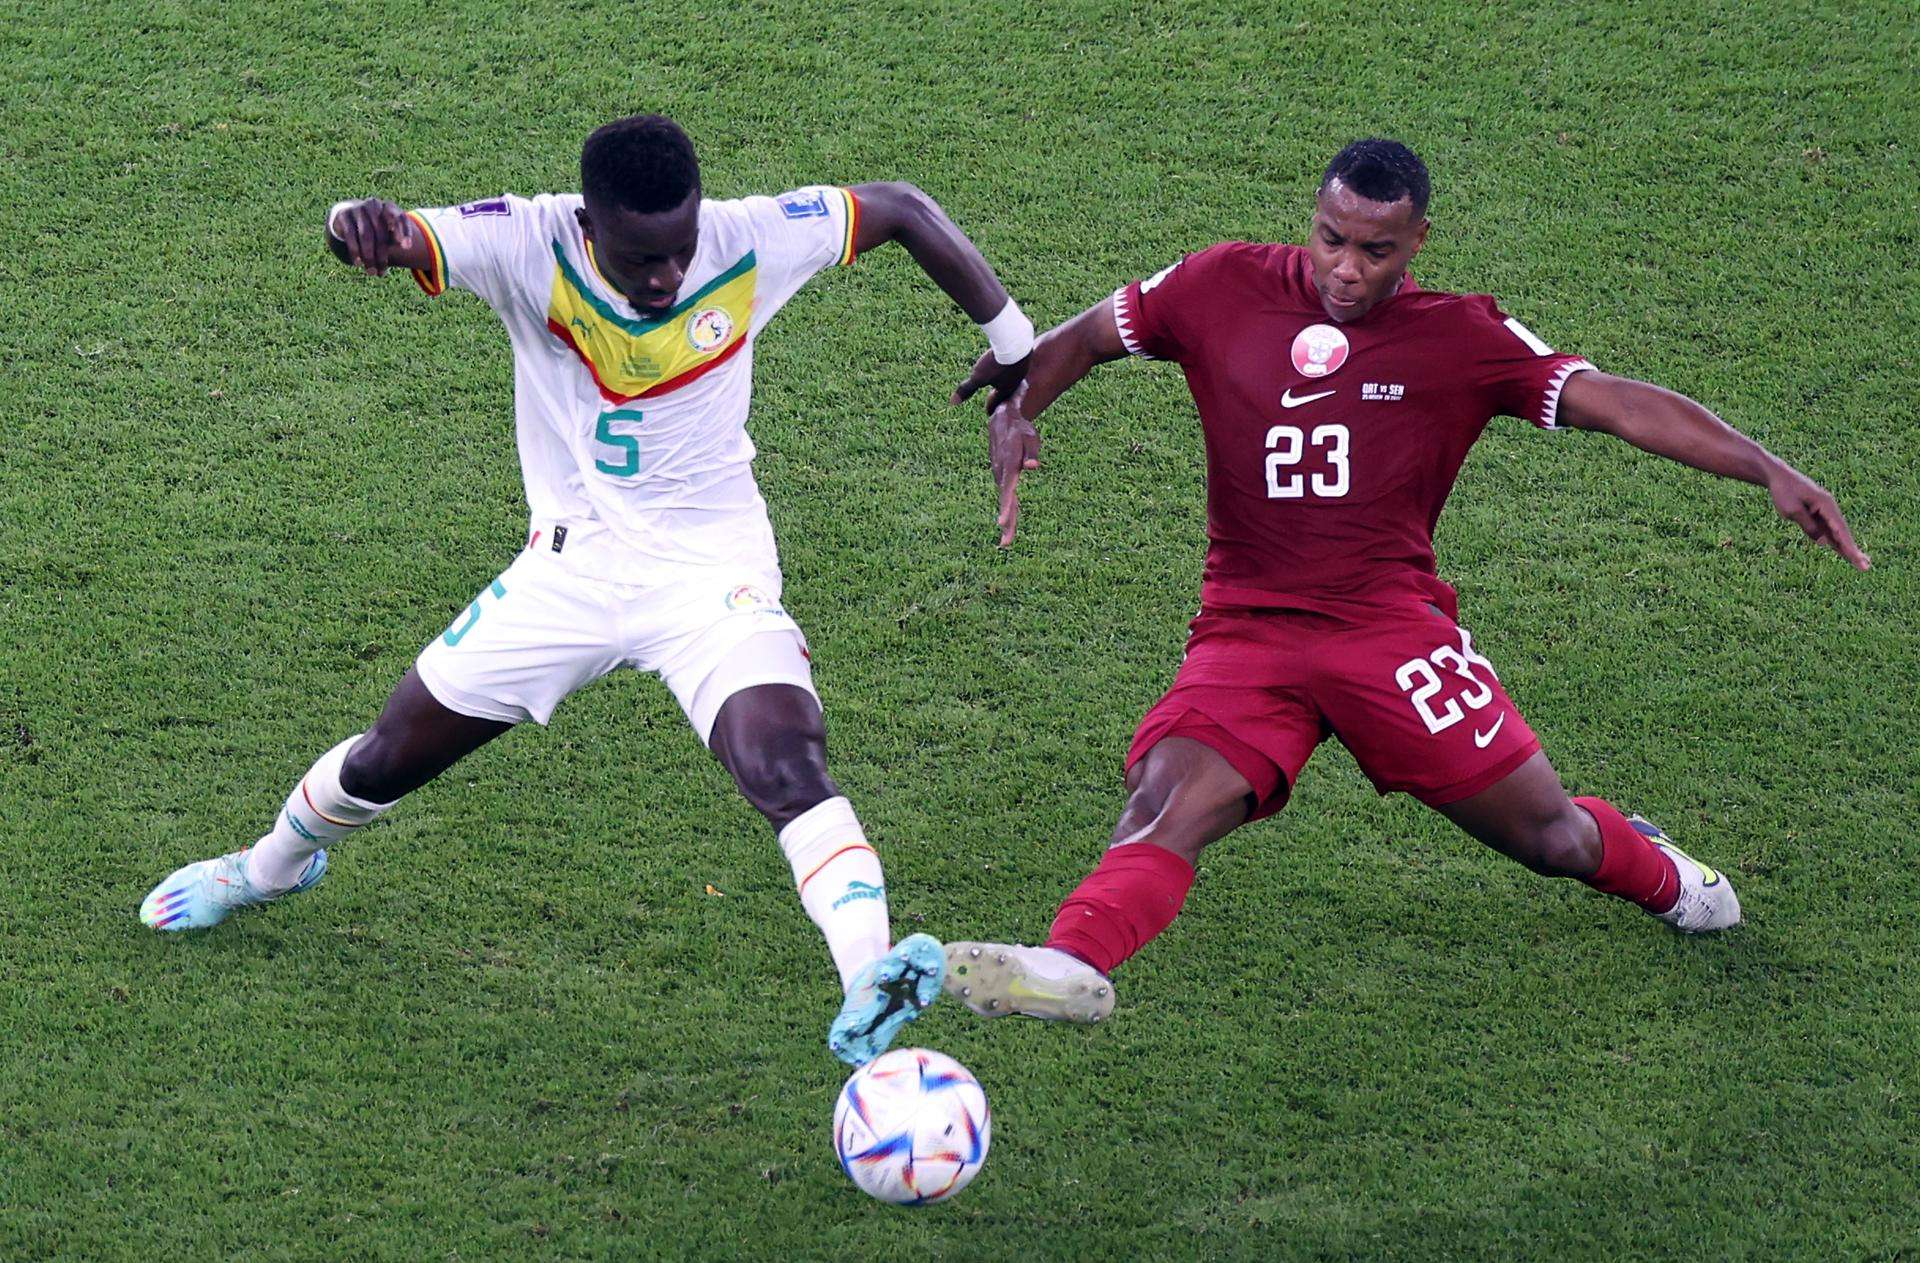 Assim Madibo de Qatar en acción contra Idrissa Gana Gueye de Senegal durante el partido en el Al Thumama Stadium en Doha 25 noviembre foto EFE EPA Mohamed Messara